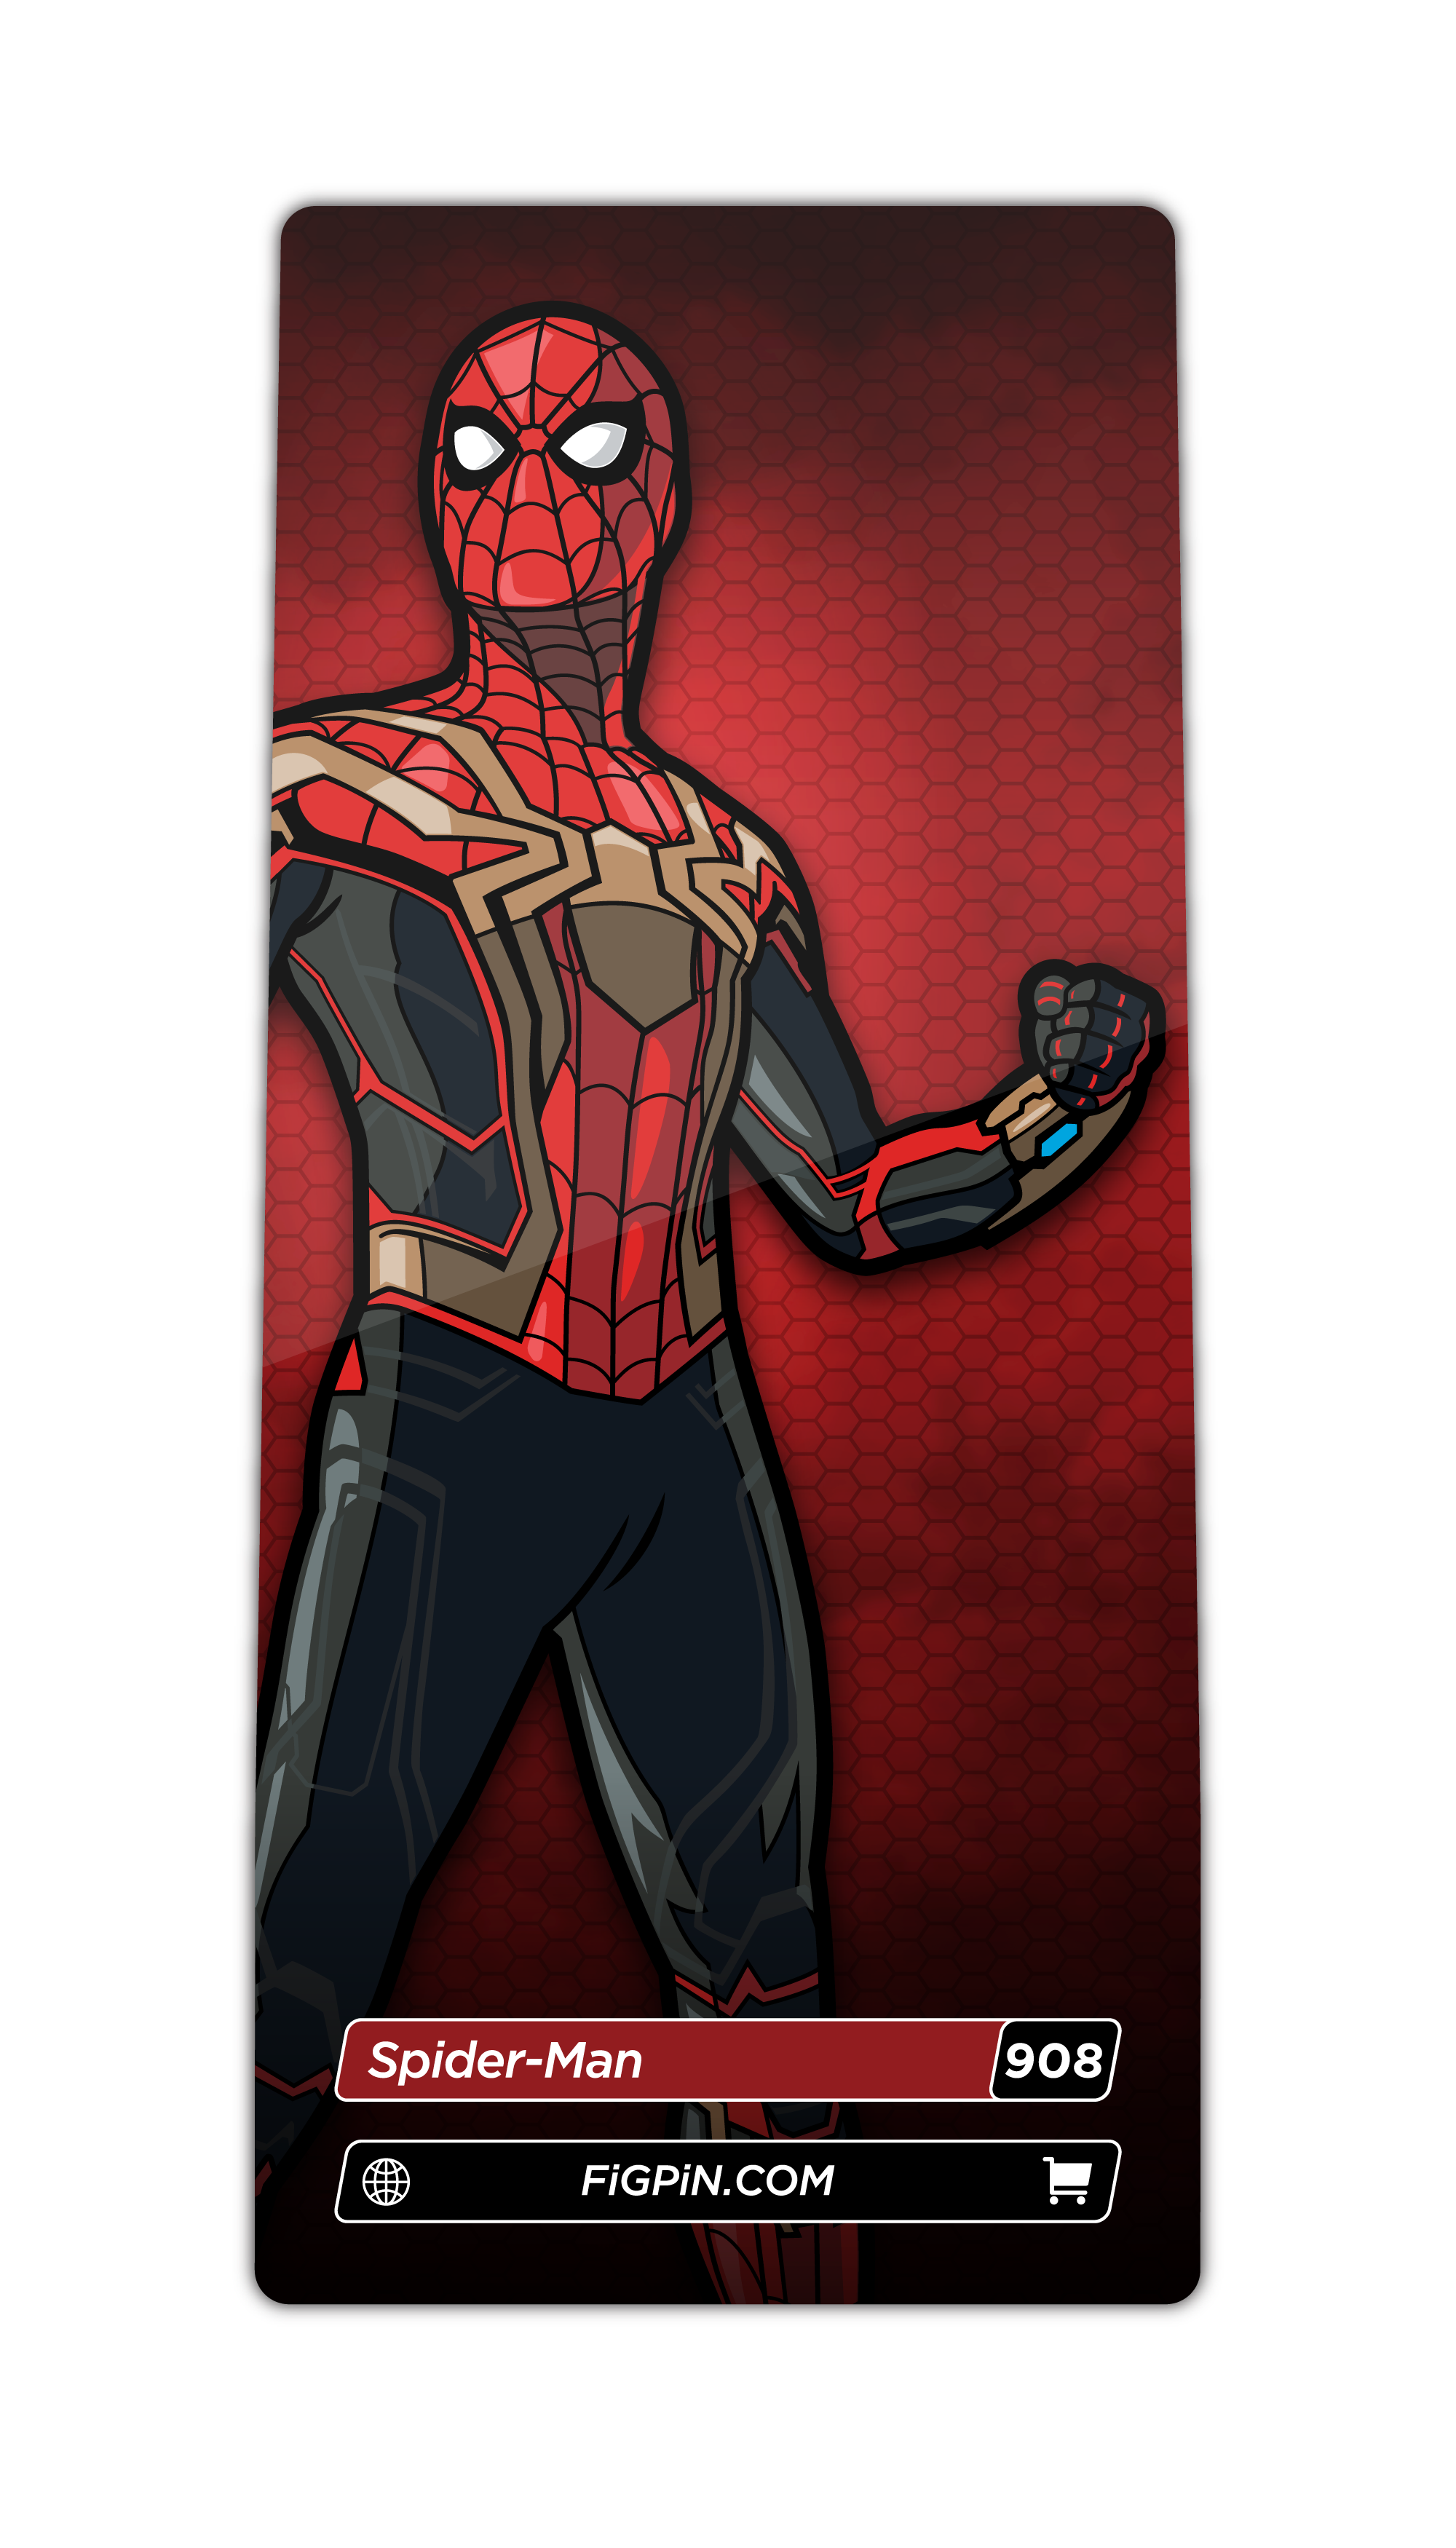 Spider-Man (908)